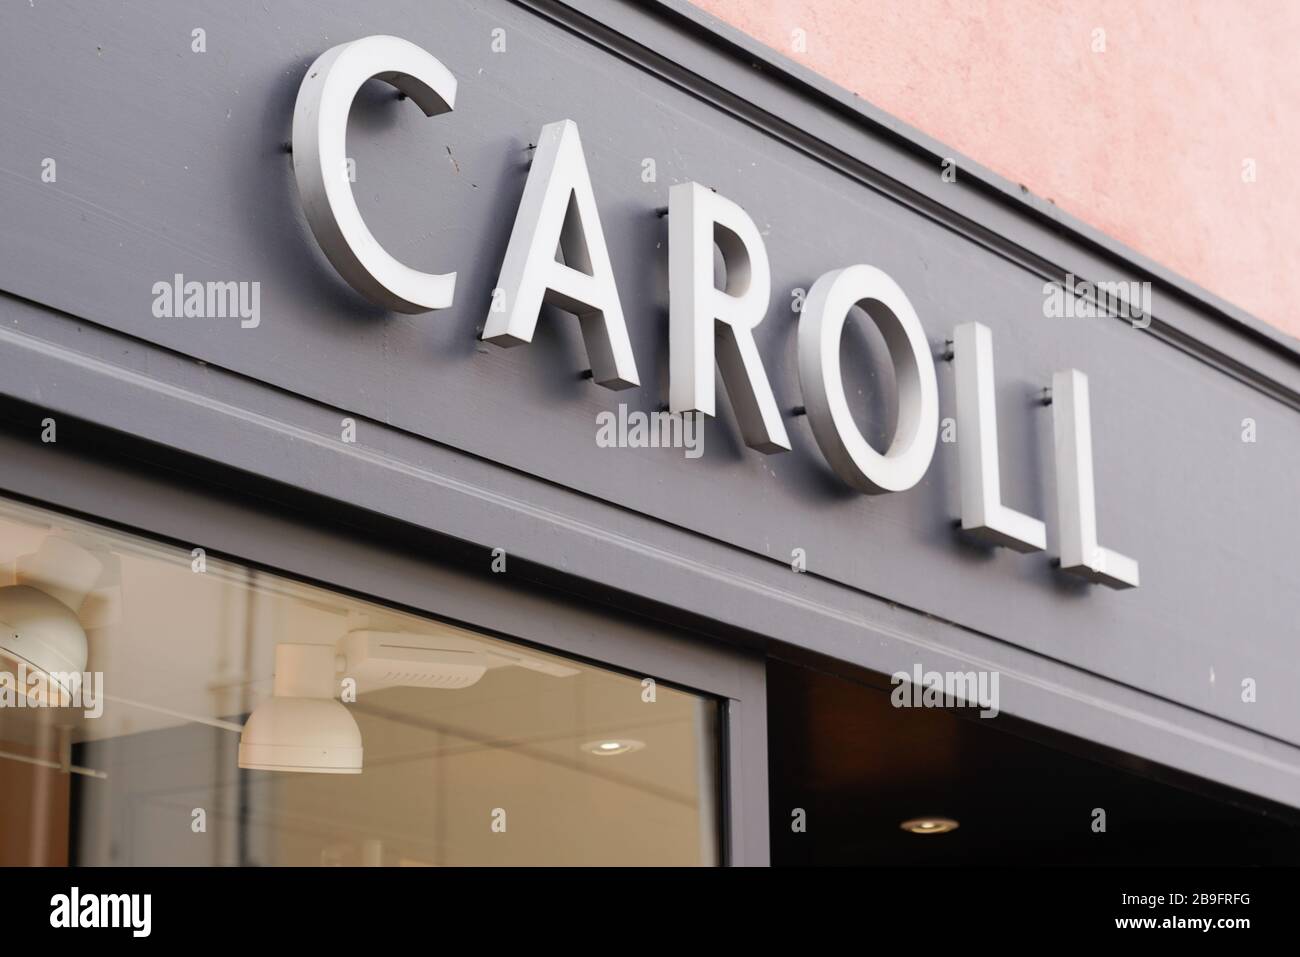 Bordeaux , Aquitaine / France - 02 20 2020 : Caroll signo logotipo texto  tienda de ropa marca francesa para mujeres Fotografía de stock - Alamy